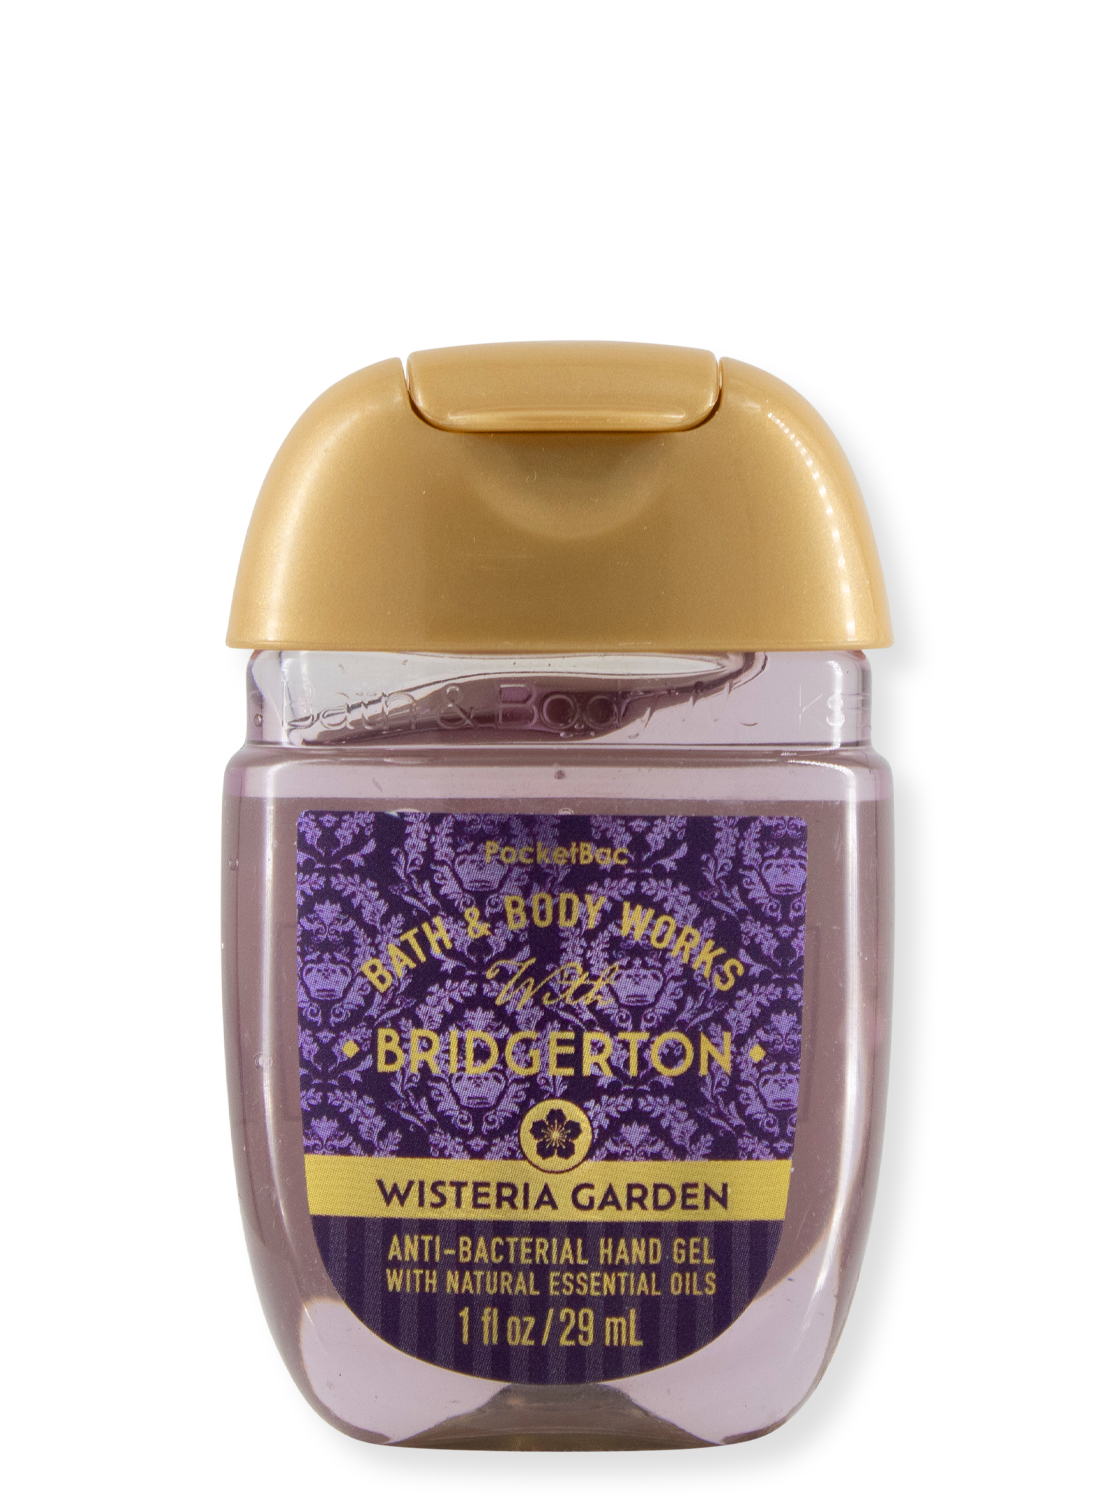 Hand-Desinfektionsgel - Bridgerton Wisteria Garden - Limited Edition - 29ml